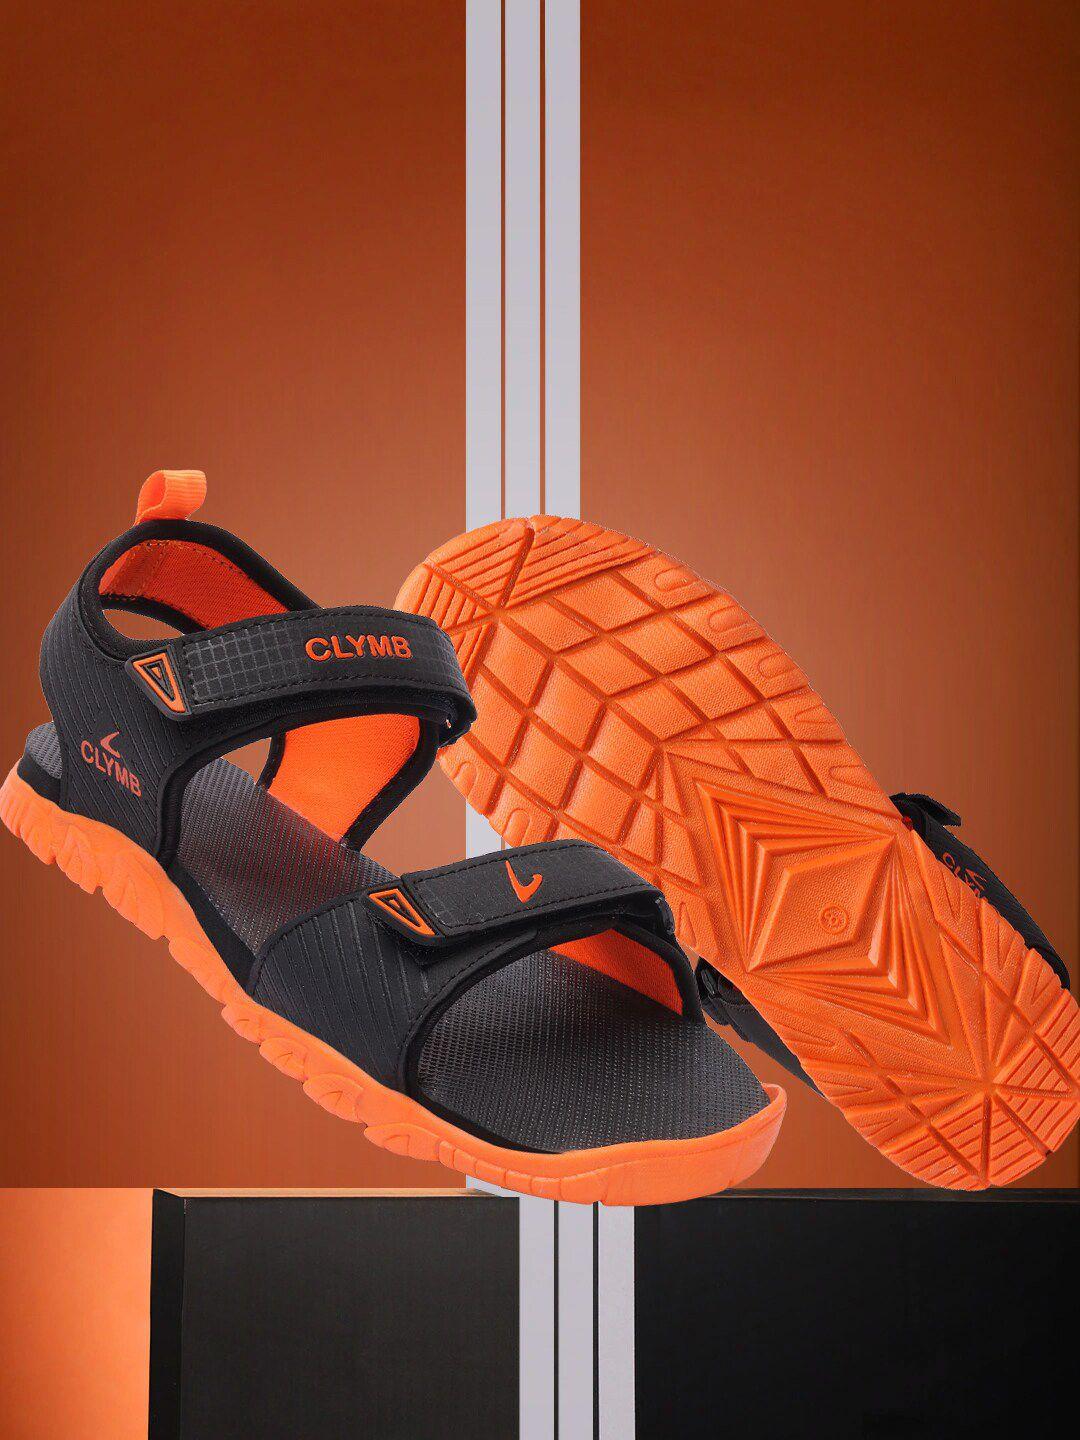 clymb-men-colourblocked-sports-sandals